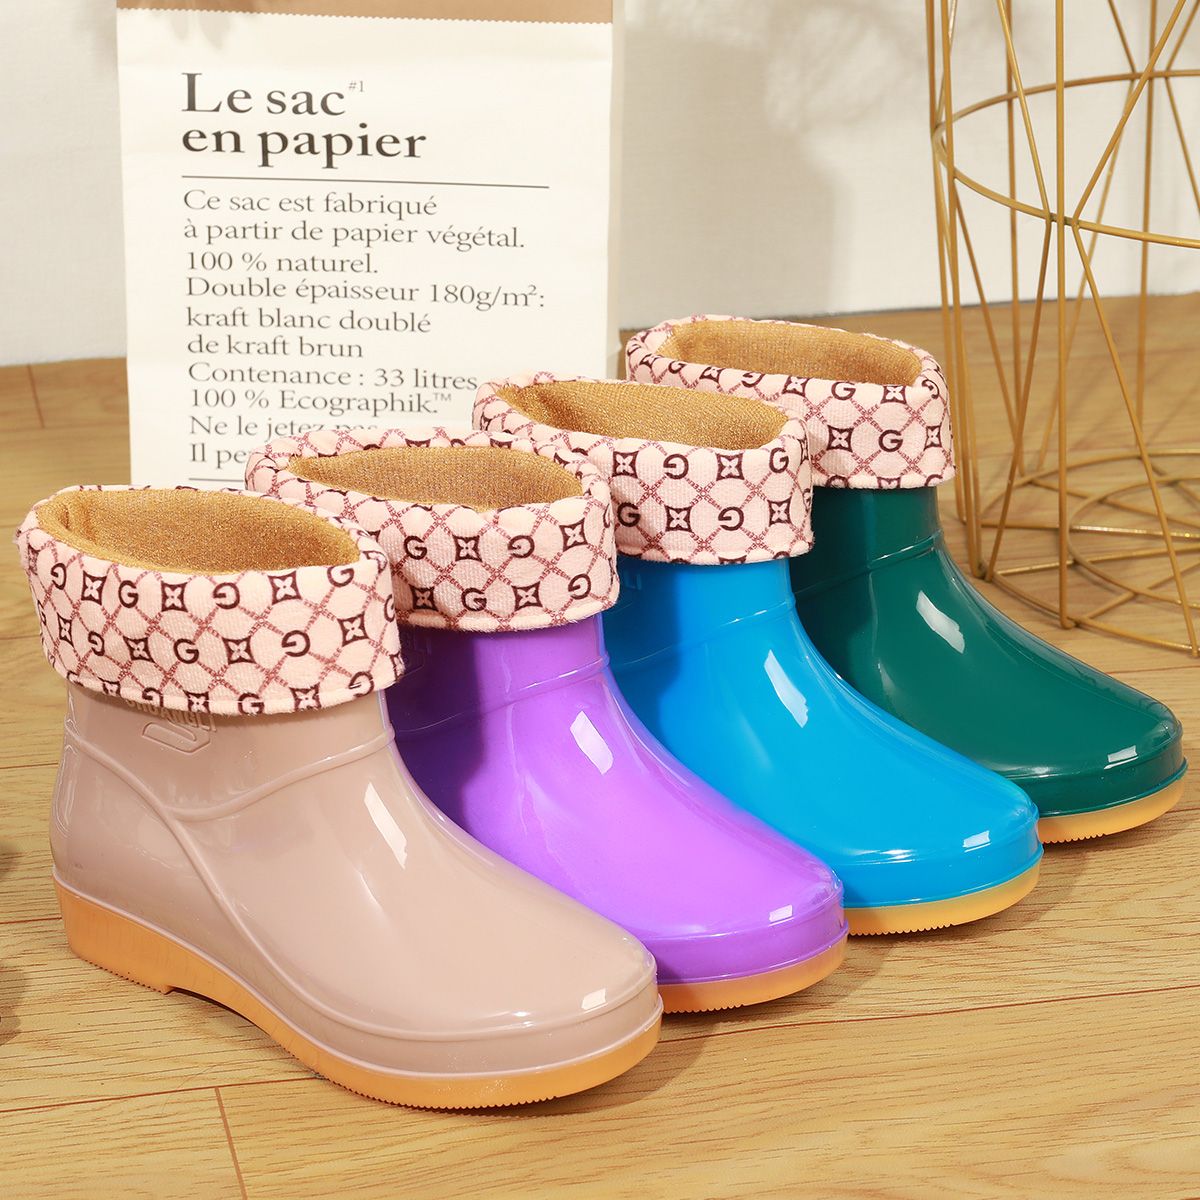 四季雨鞋女士短筒保暖雨靴成人加绒棉防水鞋防滑工作胶鞋套水靴冬